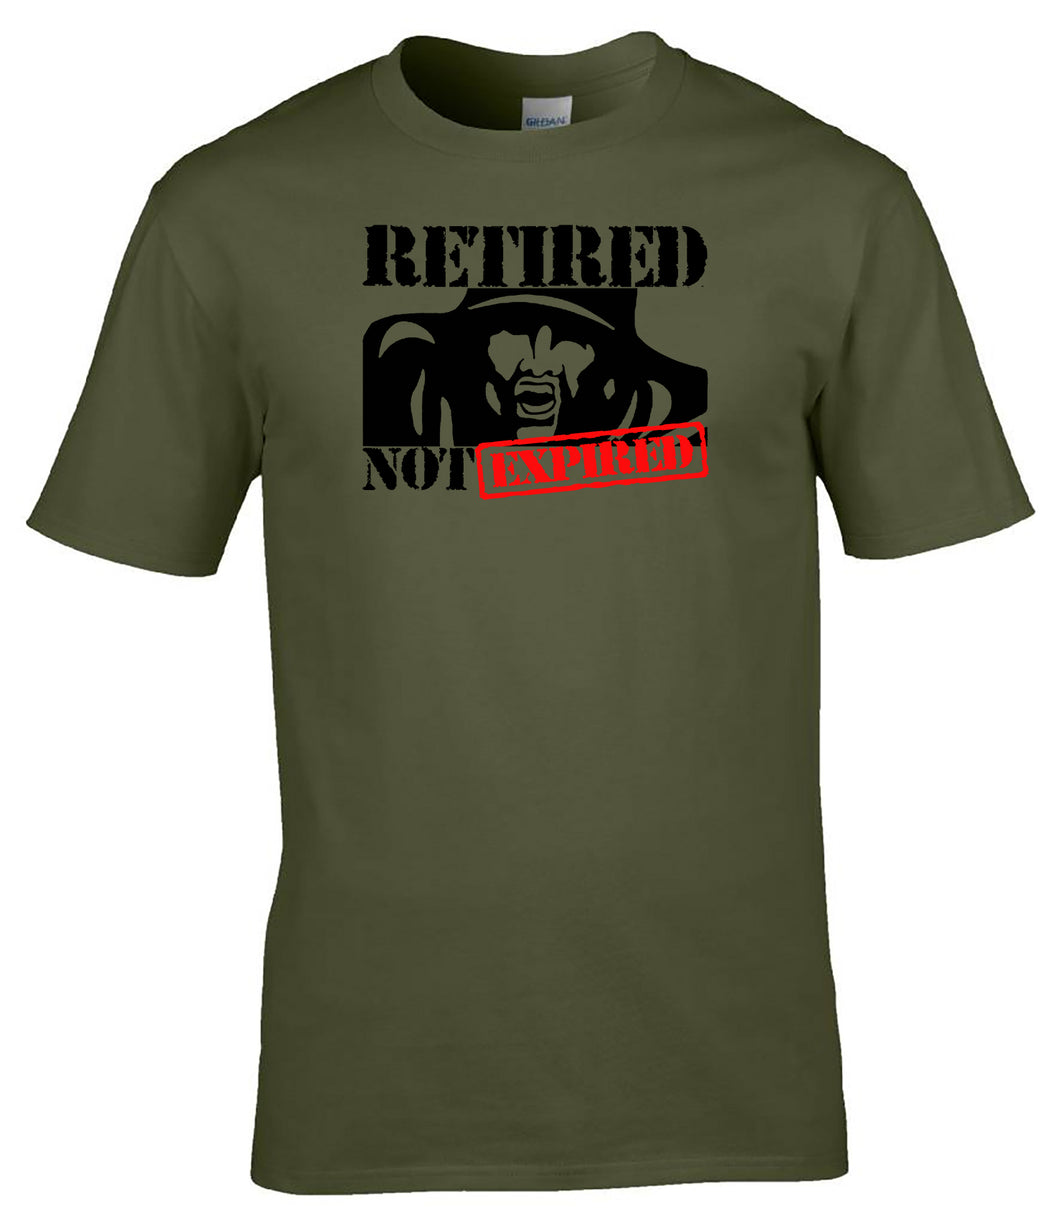 Military Humor - Veteran - Retired - Not Expired